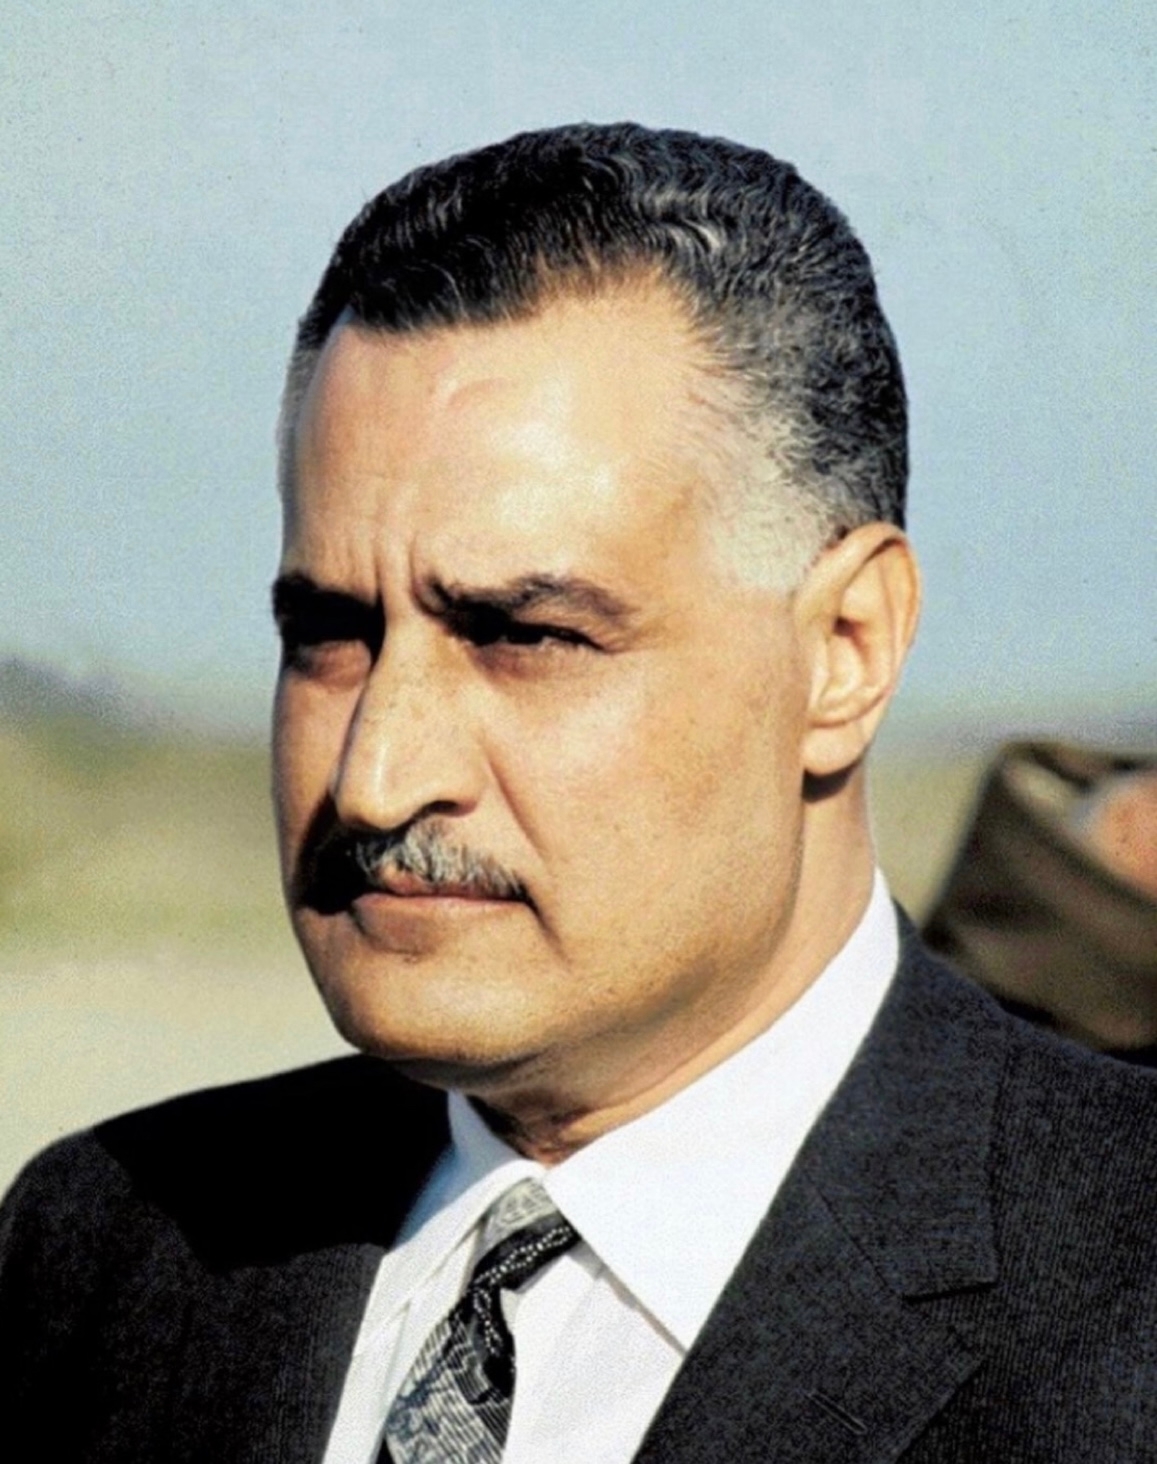 auteur Gamal Abdel Nasser de la citation Nous devons suivre une route couverte de sang. Nous n'avons pas d'autre alternative. Pour nous, c'est une question de vie ou de mort, une question de vie ou existante. Nous devons être prêts à faire face aux défis qui nous attendent.